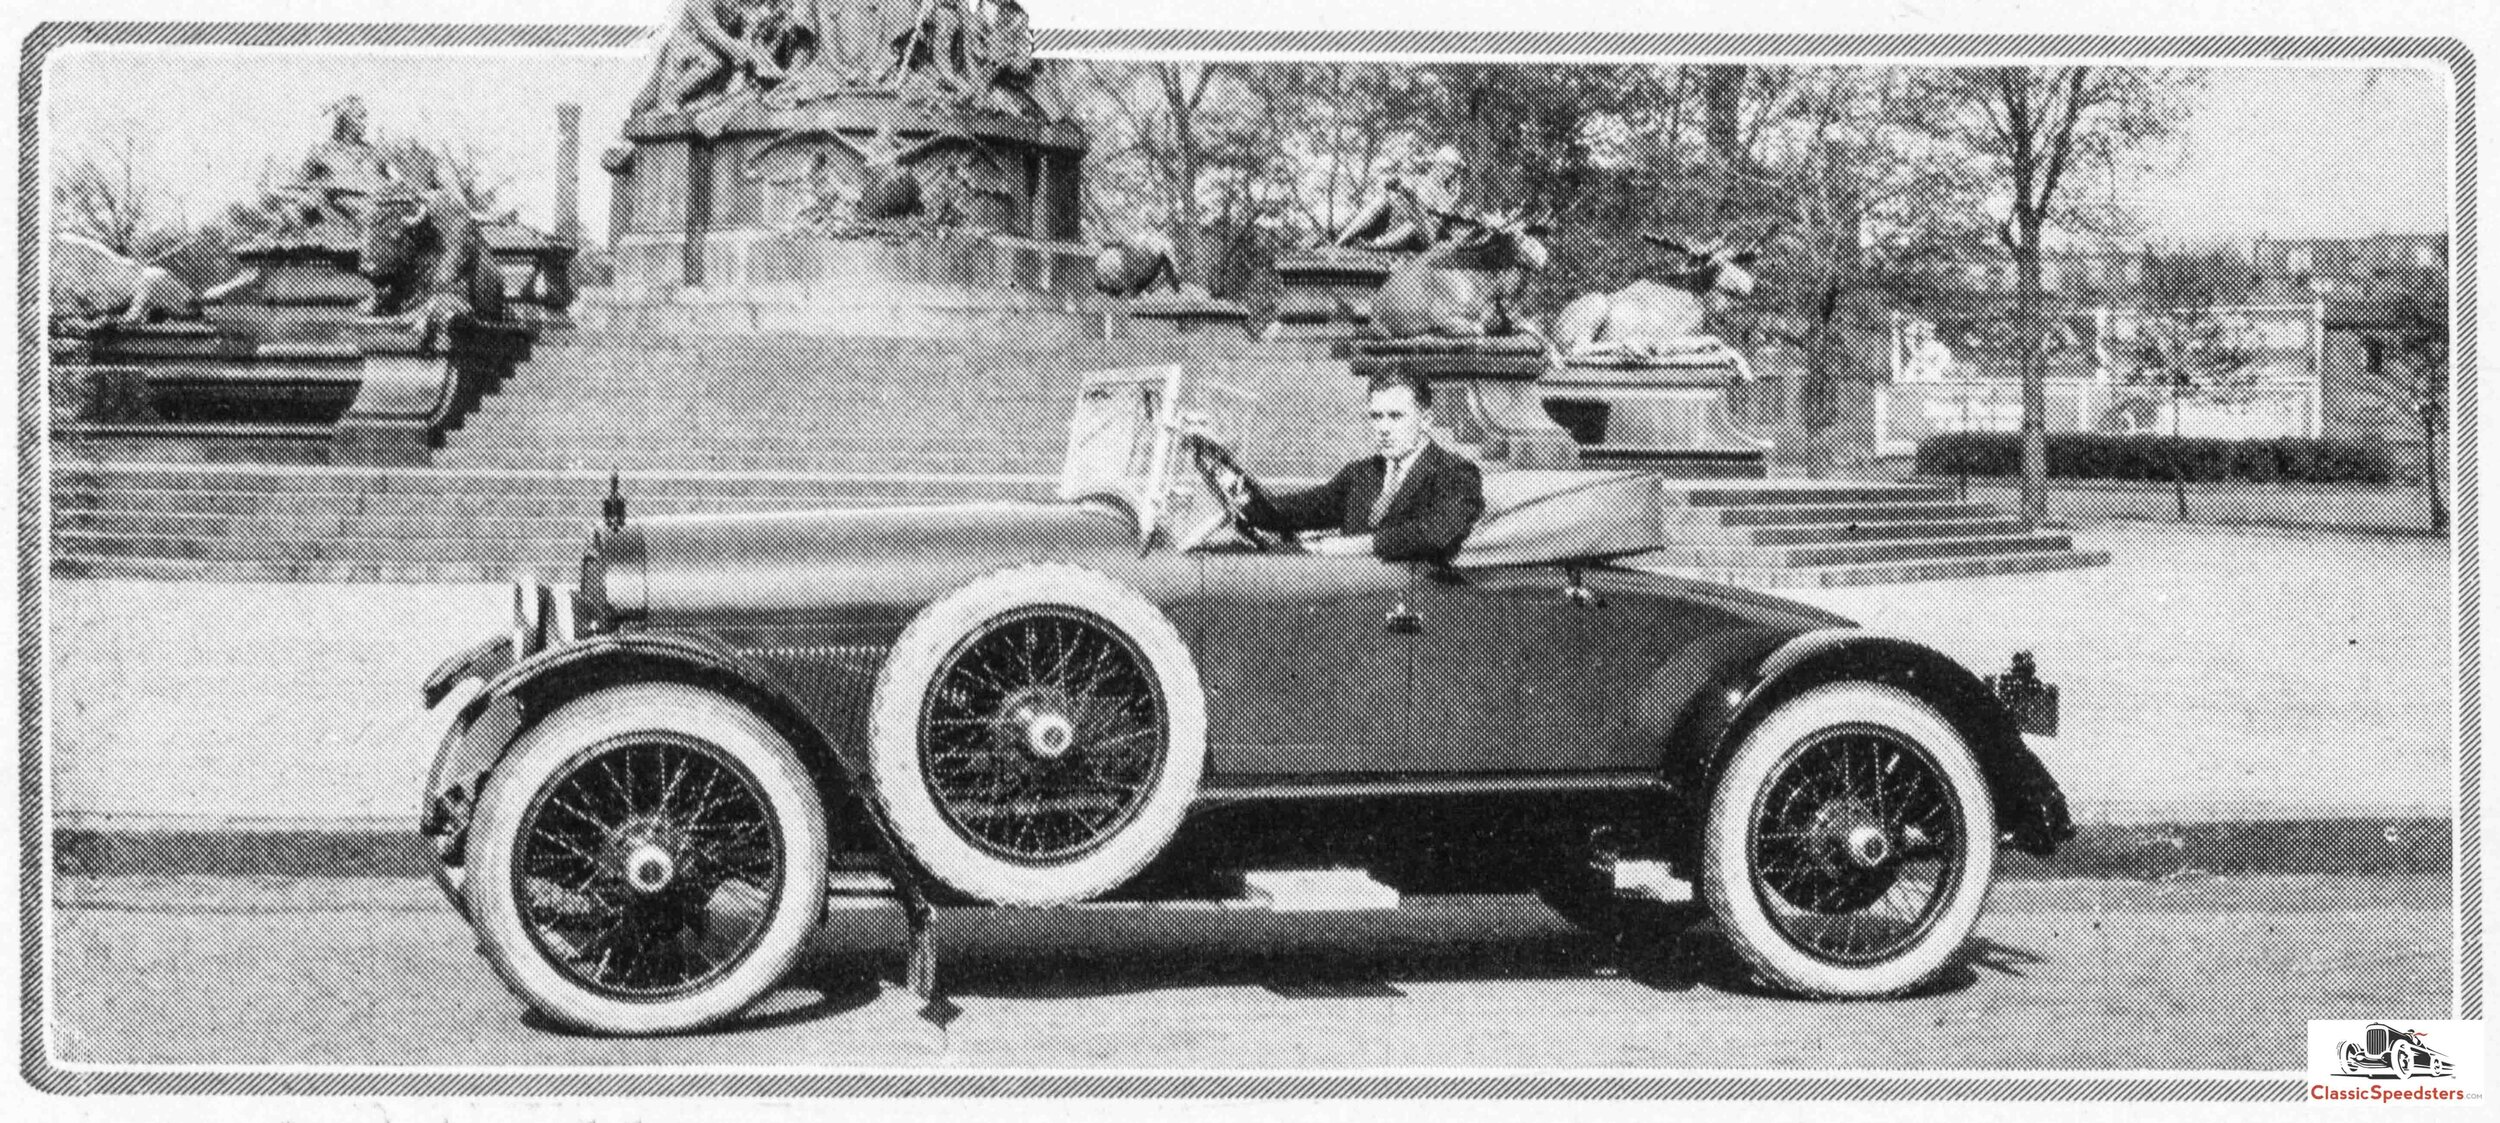 Jack+Kelly+in+his+1921+Haynes+Special+Speedster.jpg